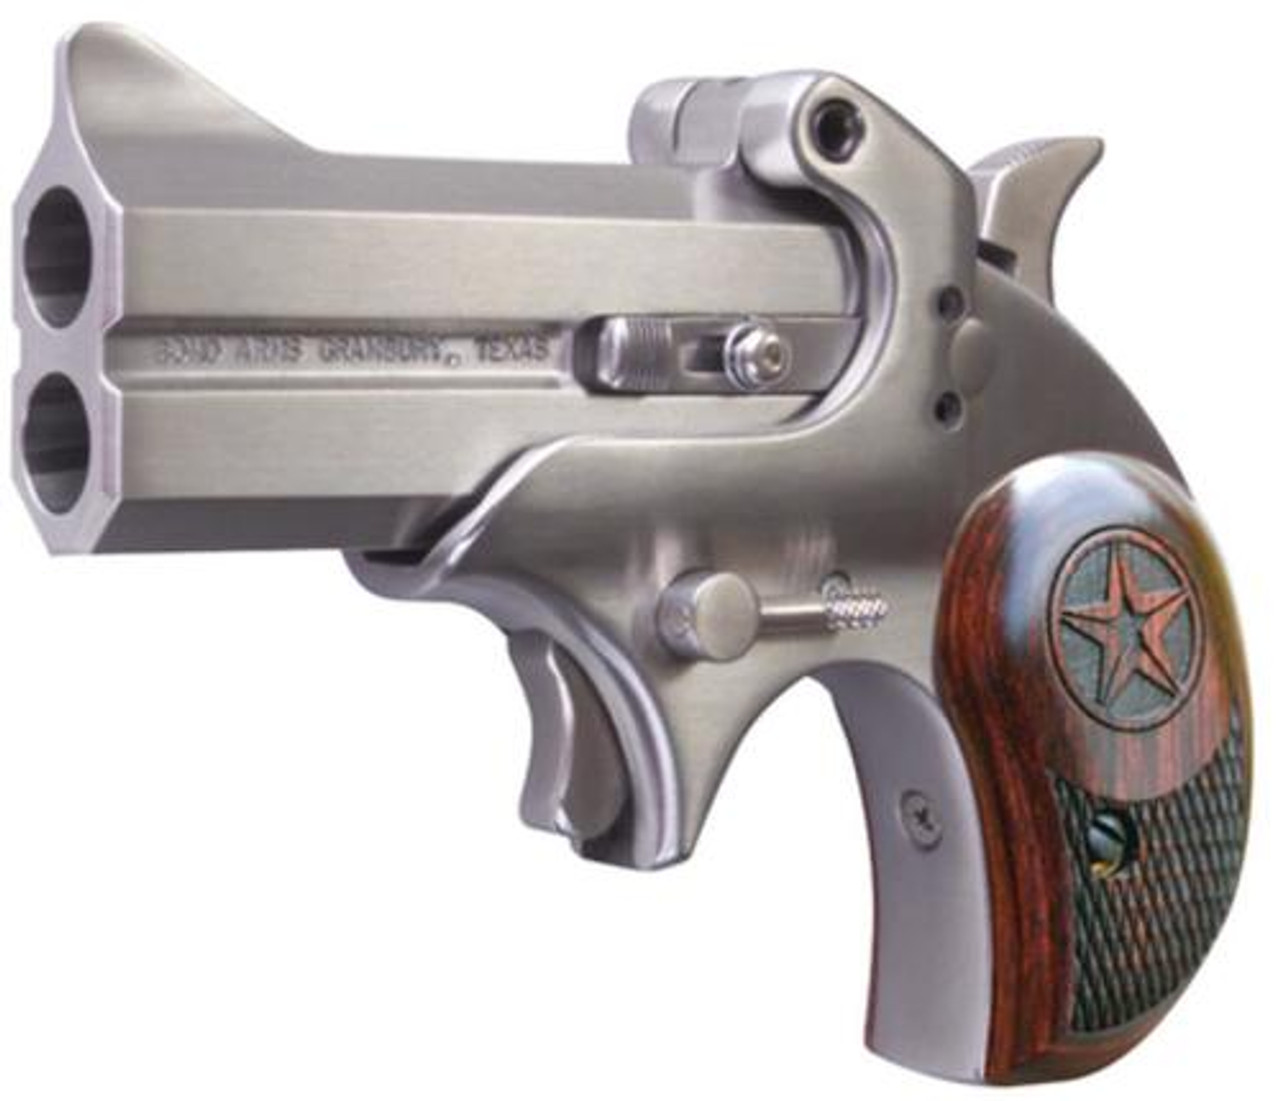 Bond Arms Roughneck 45 ACP Derringer Pistol